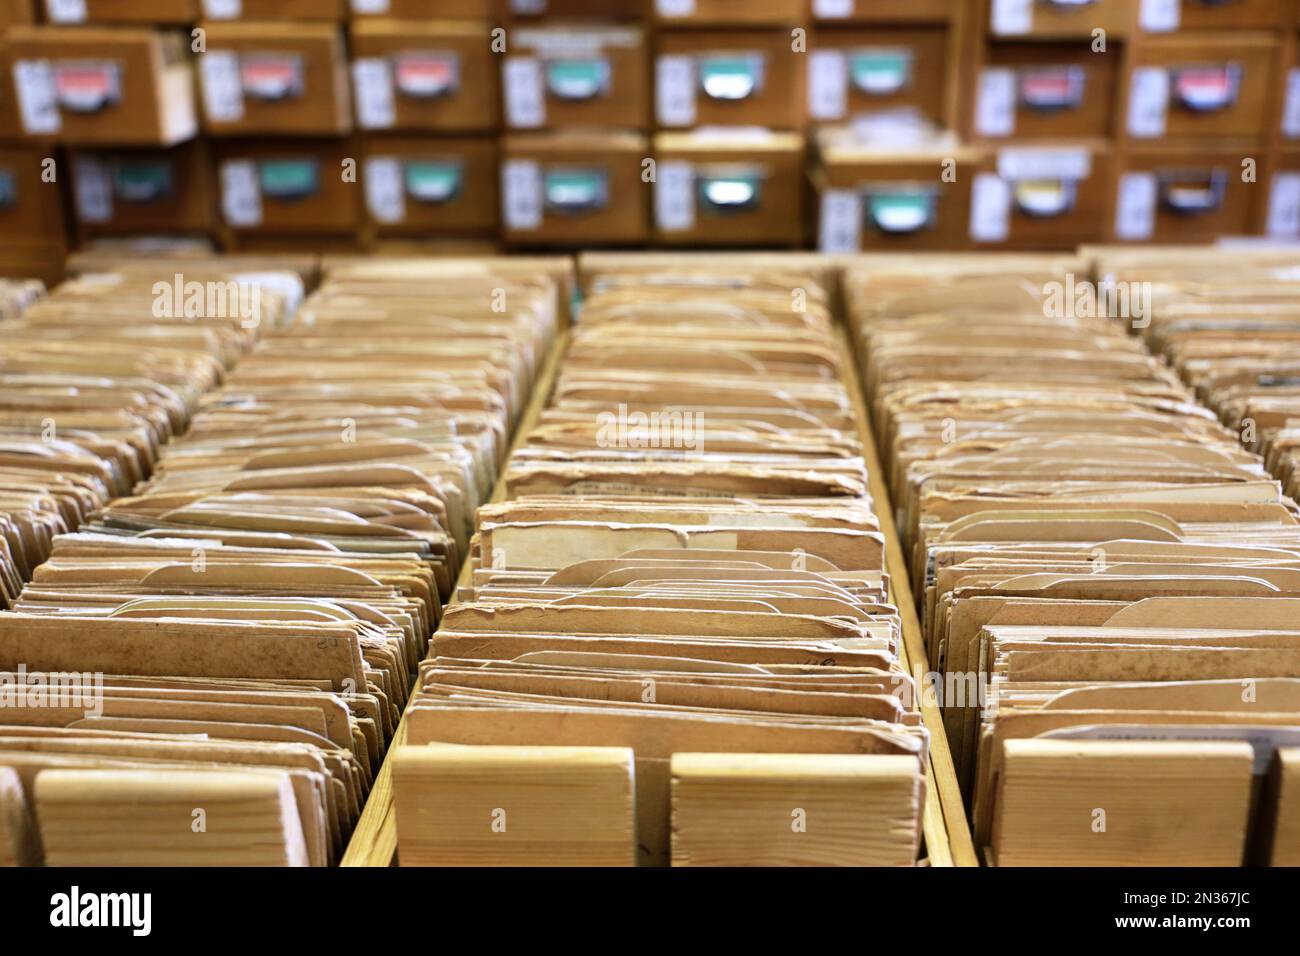 Schede catalogo biblioteca in vecchia scatola di legno. Archivio file, cassetti aperti con documenti cartacei, concetto di database Foto Stock